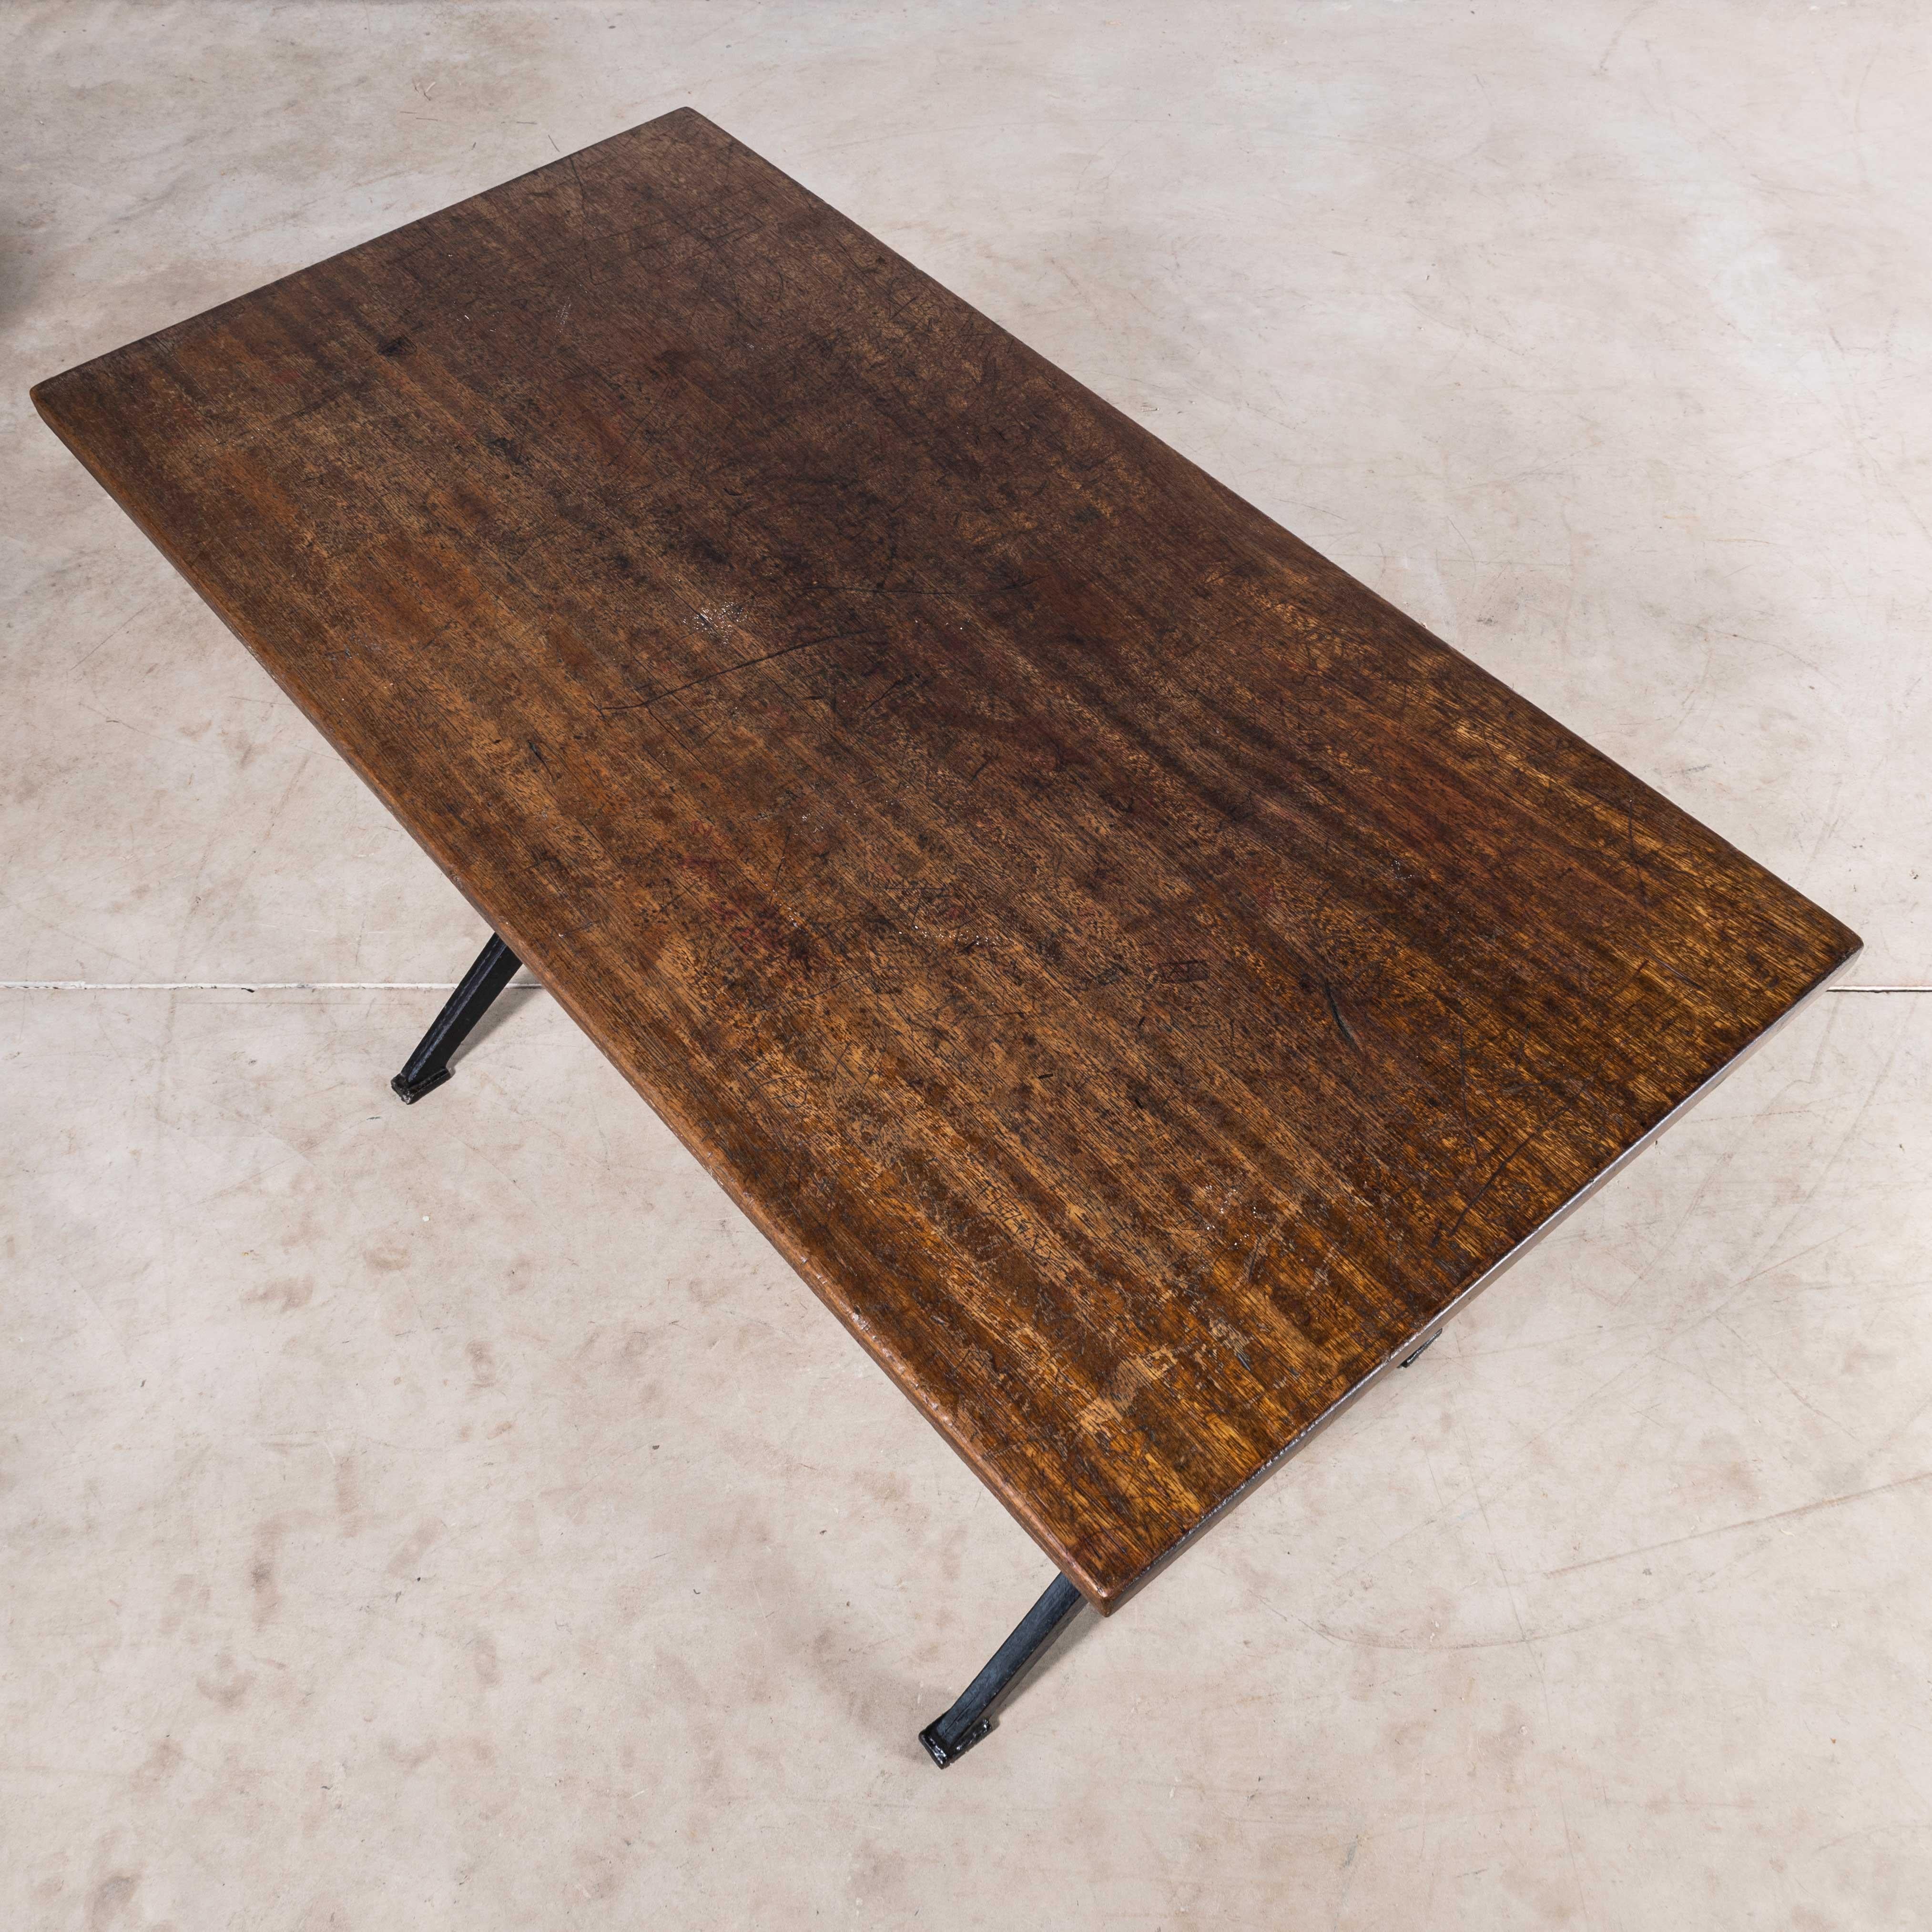 1930's Original Baumann Cast Metal Base Table (874.1) For Sale 5